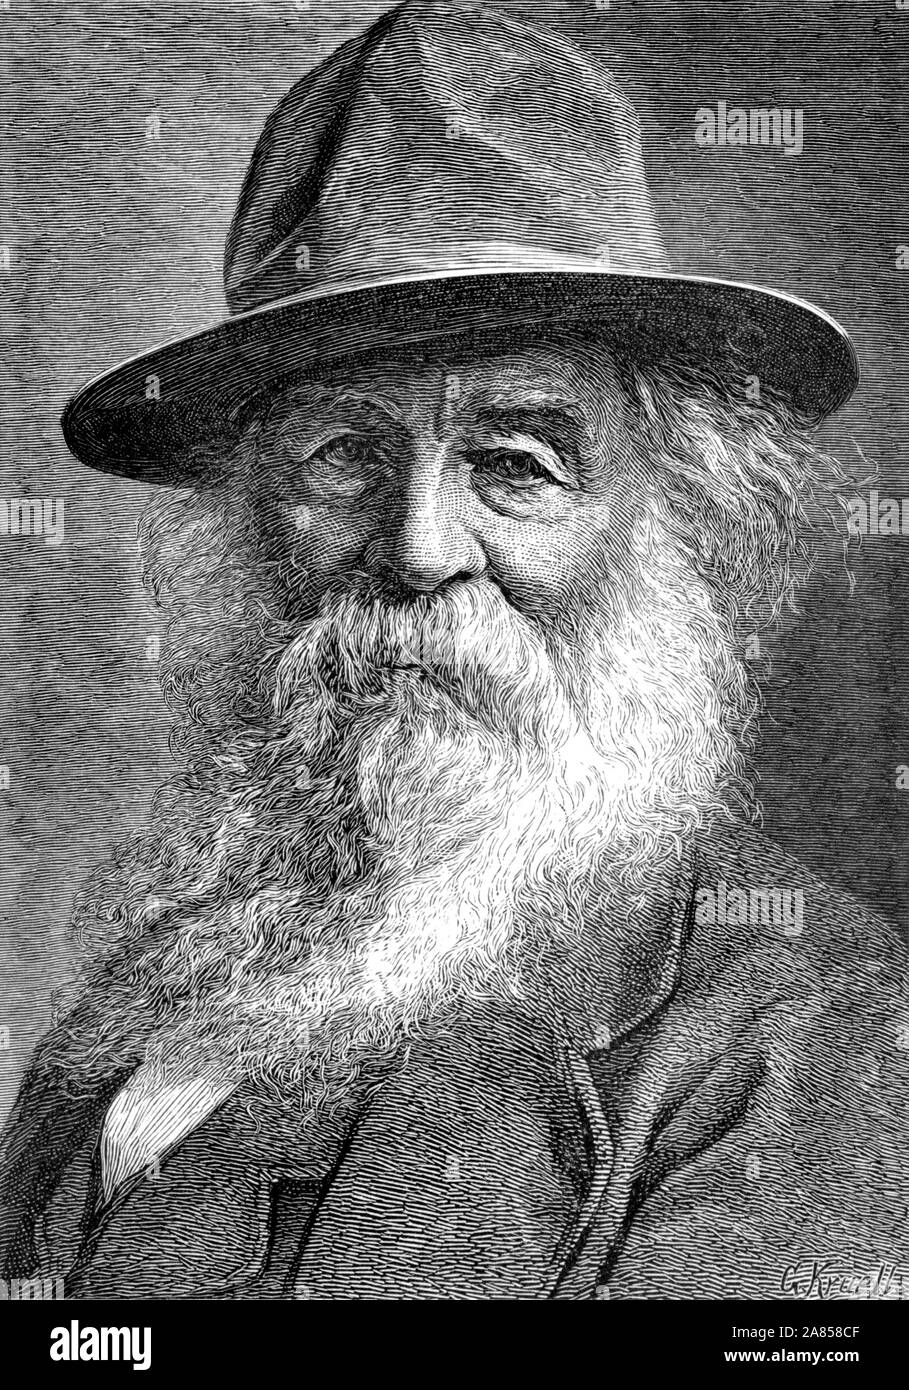 Jahrgang Porträt der amerikanischen Dichter, Essayist und Journalist Walt Whitman (1819 - 1892). Abbildung: ca. 1886 von G Kruell. Stockfoto